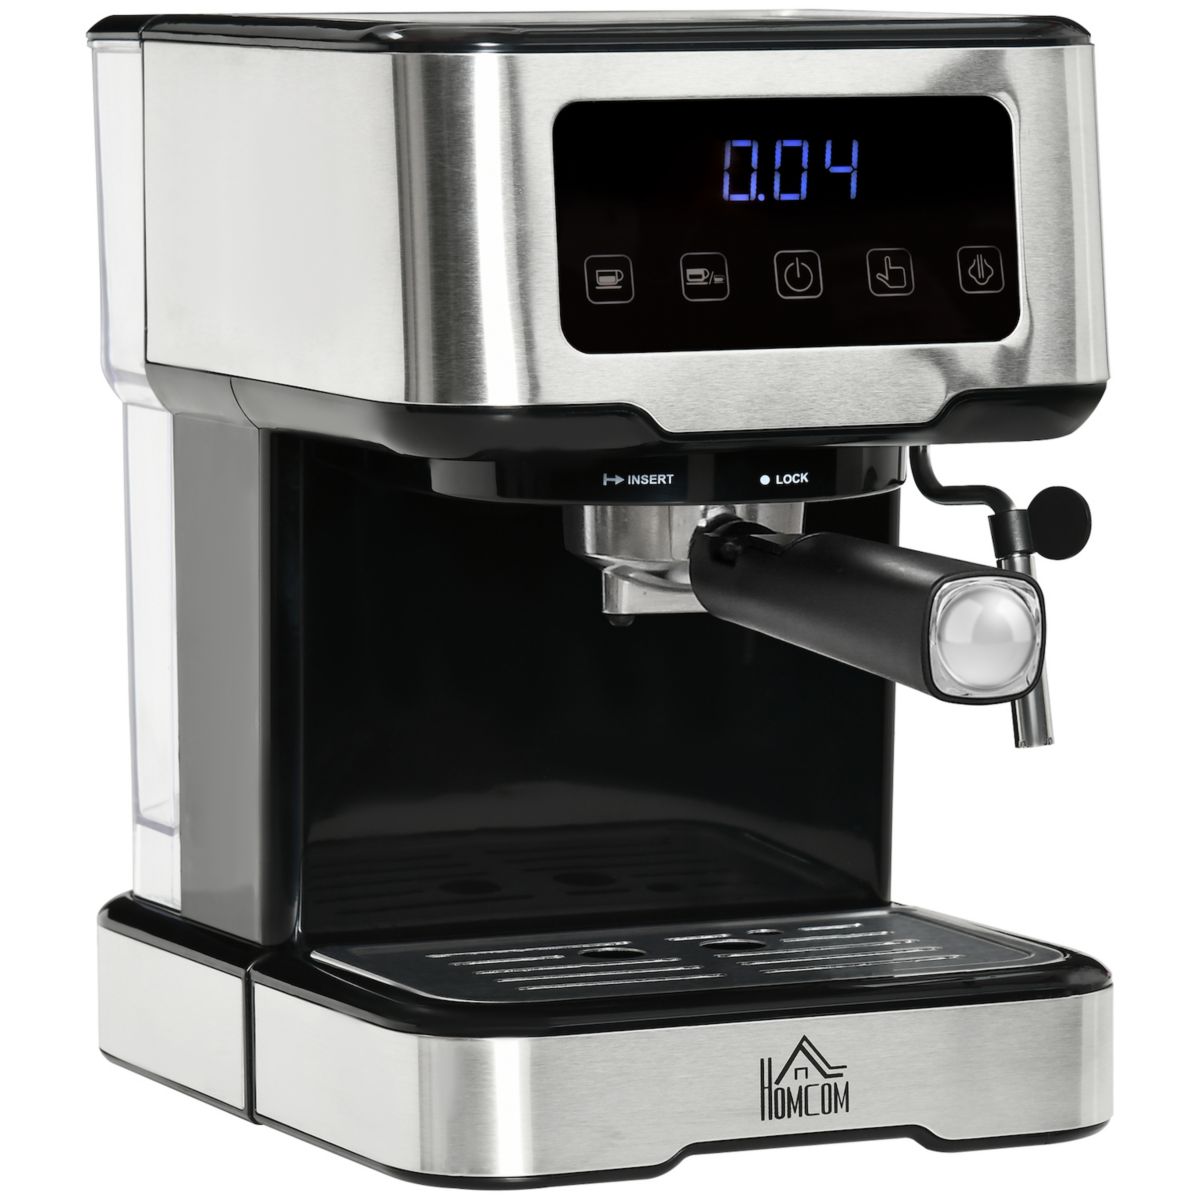 Эспрессо-машина HOMCOM с насадкой для вспенивания молока, кофеварка с насосом на 15 бар и съемным резервуаром для воды на 1,5 л для эспрессо, латте и капучино HomCom